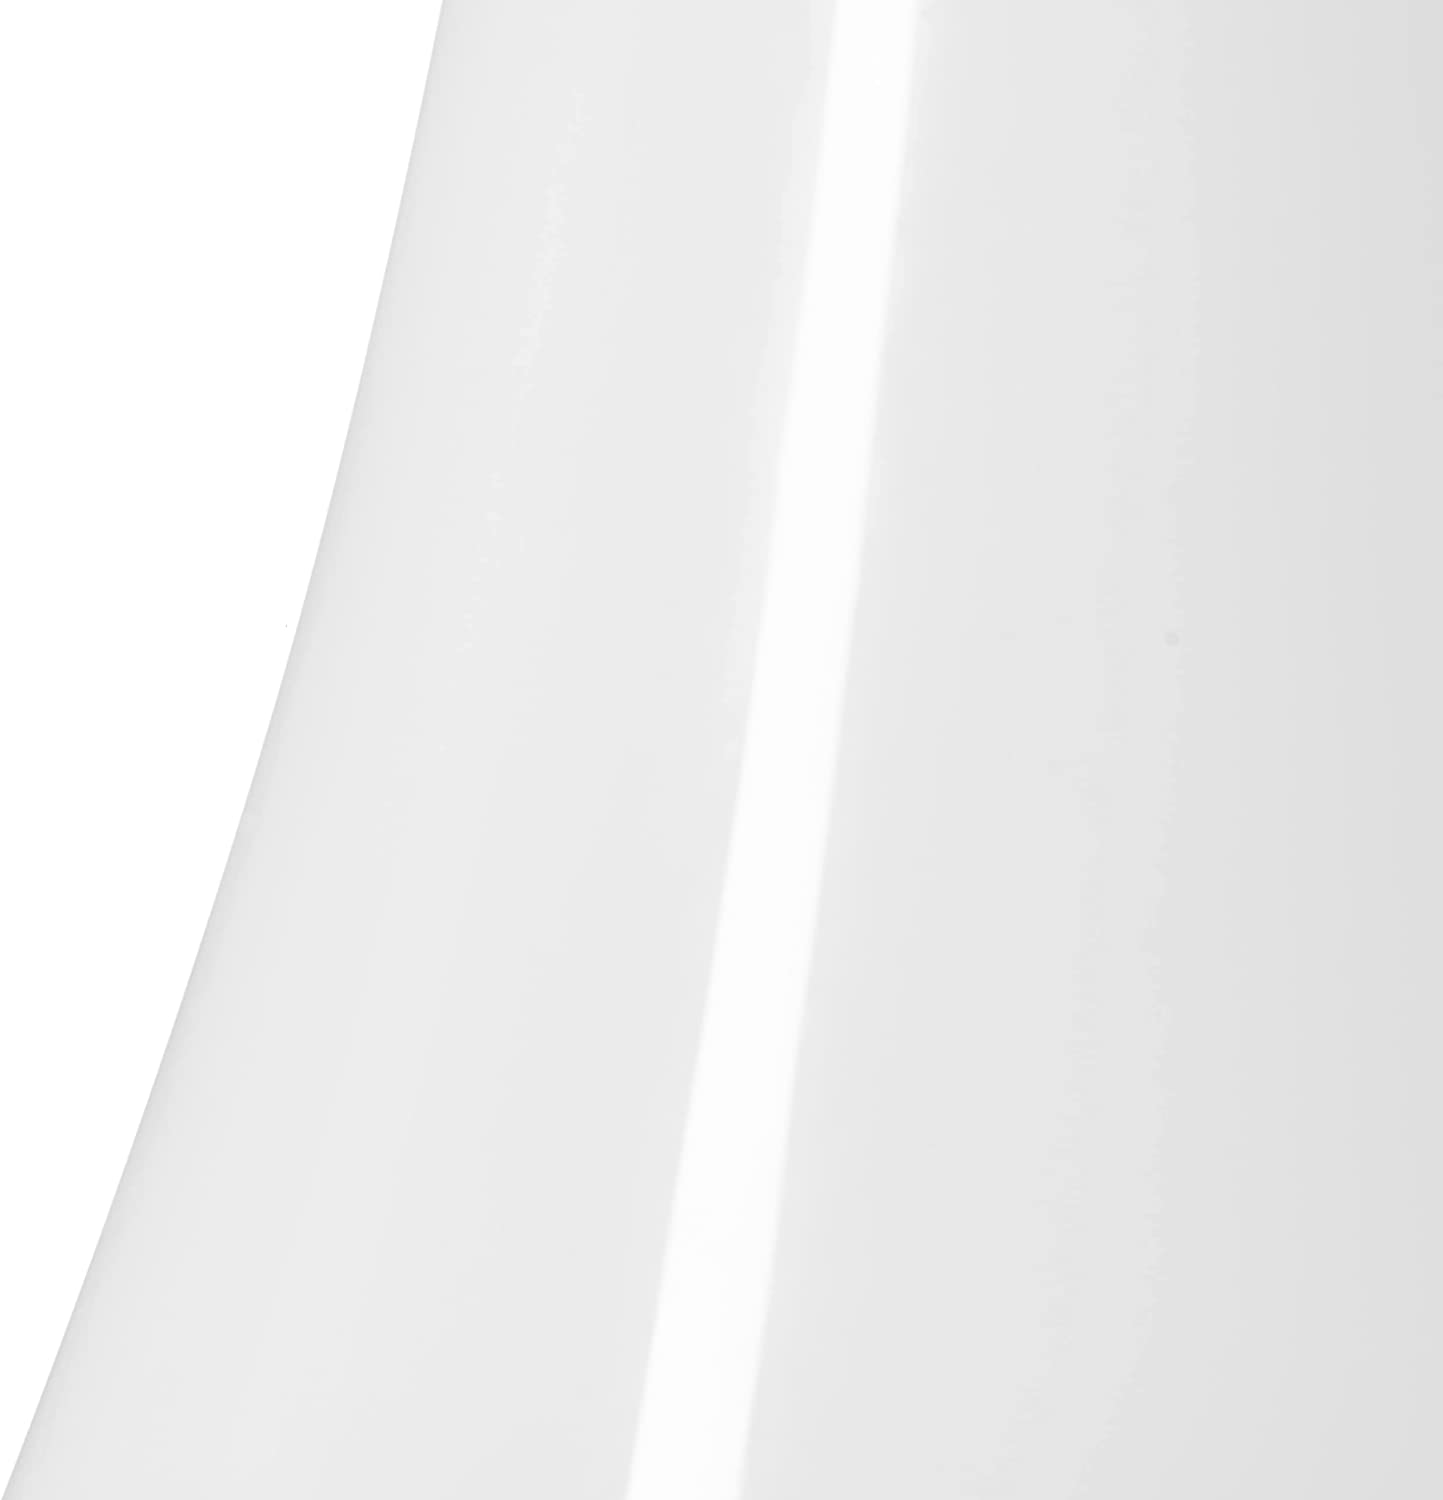 Leonardo Sacchetta 035604 Floor Vase Handmade Solifleur Vase in Curved Shape Modern Decorative Vase in White Glass Height 60 cm